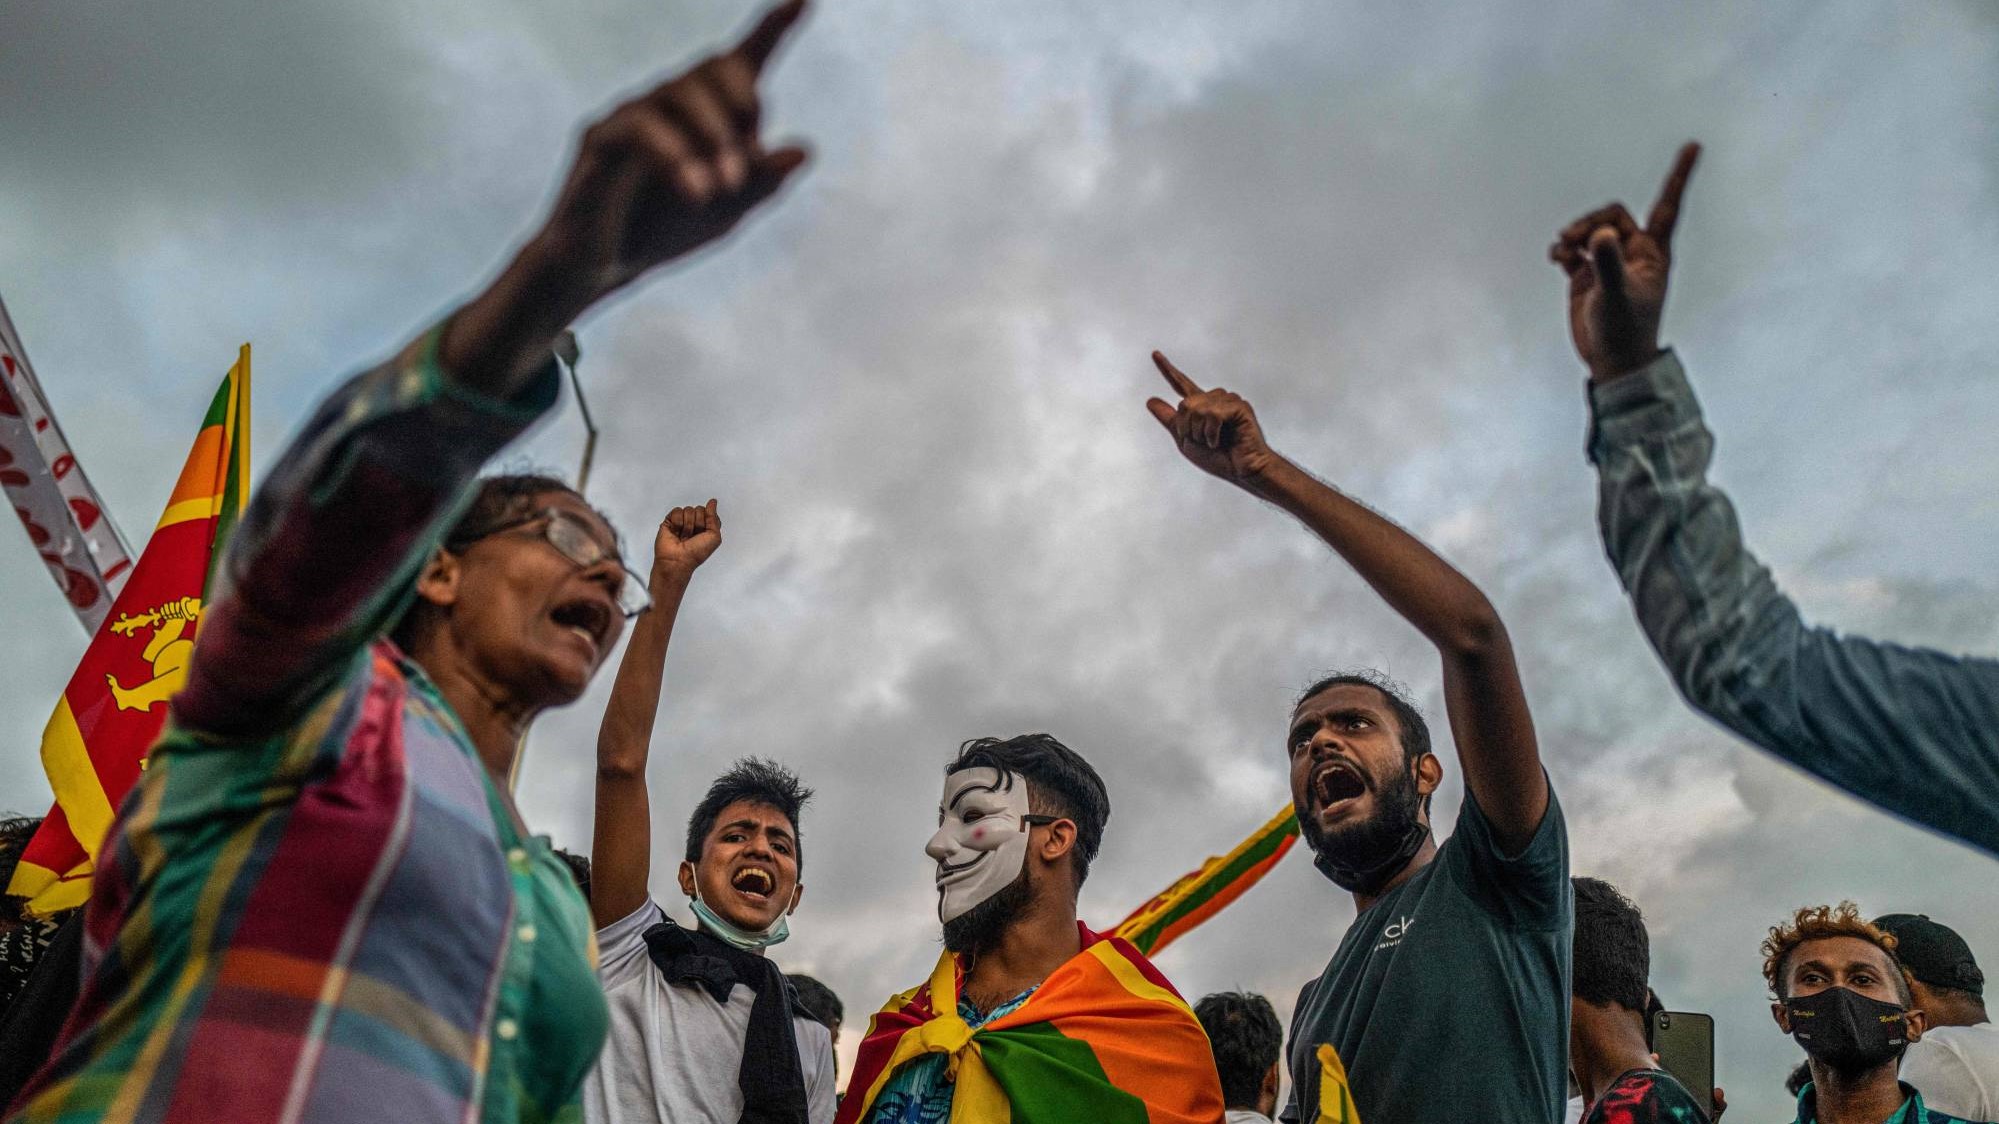 متظاهرون يهتفون بشعارات خلال مظاهرة مناهضة للحكومة بالقرب من مكتب الرئيس في كولومبو، سريلانكا